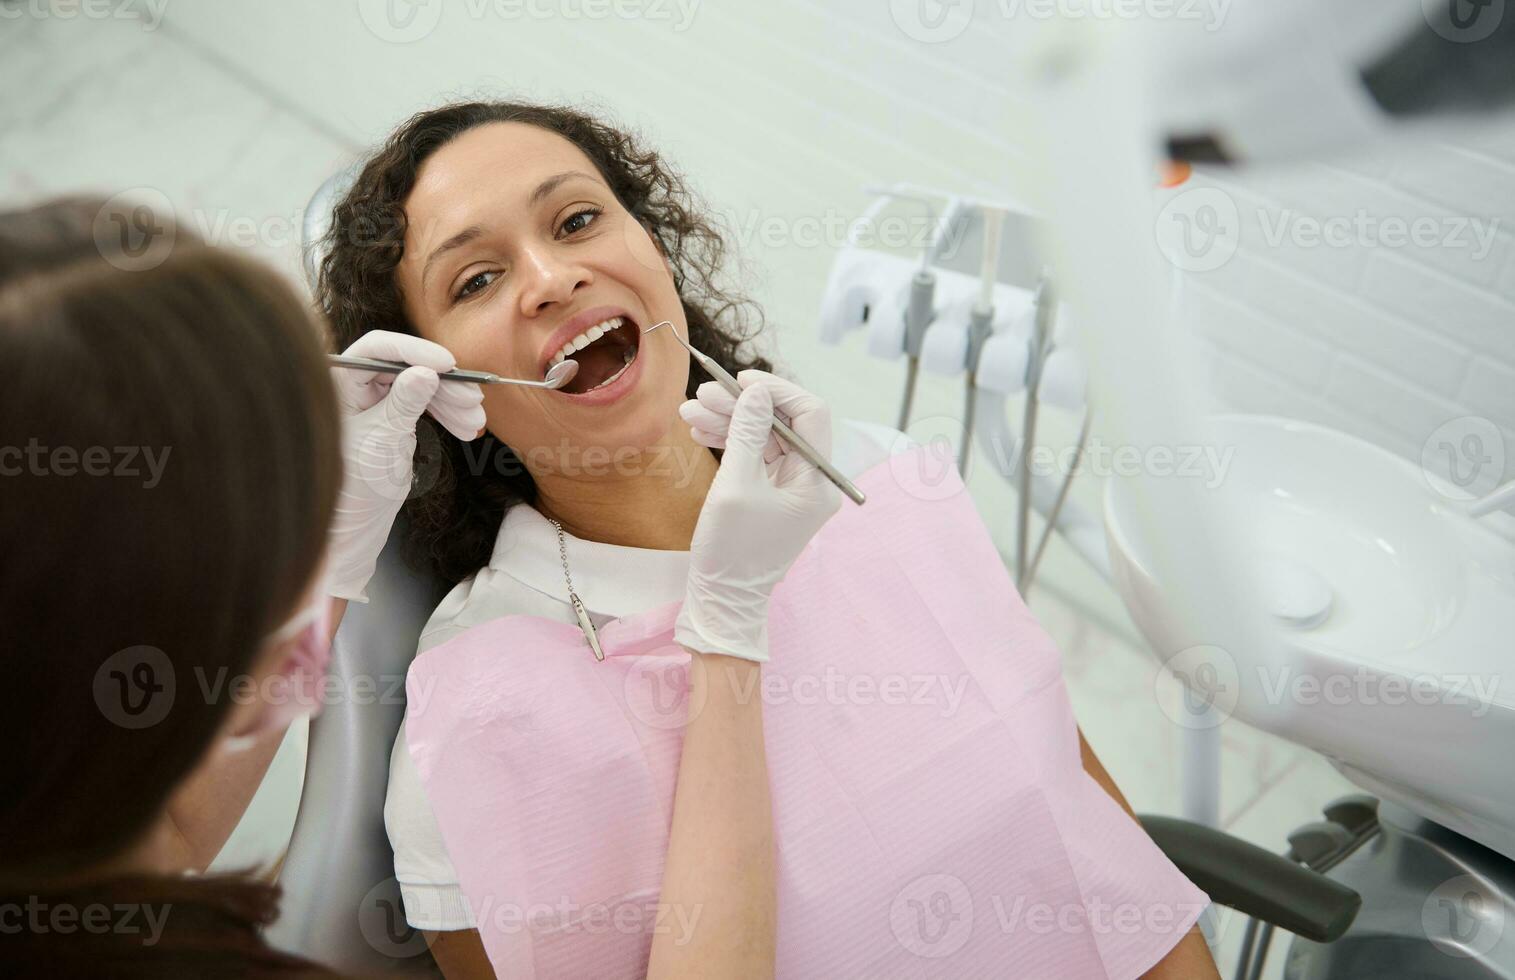 aantrekkelijk jong vrouw met mooi glimlach zit in de tandarts stoel met haar mond Open terwijl de hygiënist onderzoekt of behandelt haar tanden gebruik makend van roestvrij staal tandheelkundig instrumenten - spiegel en sonde foto